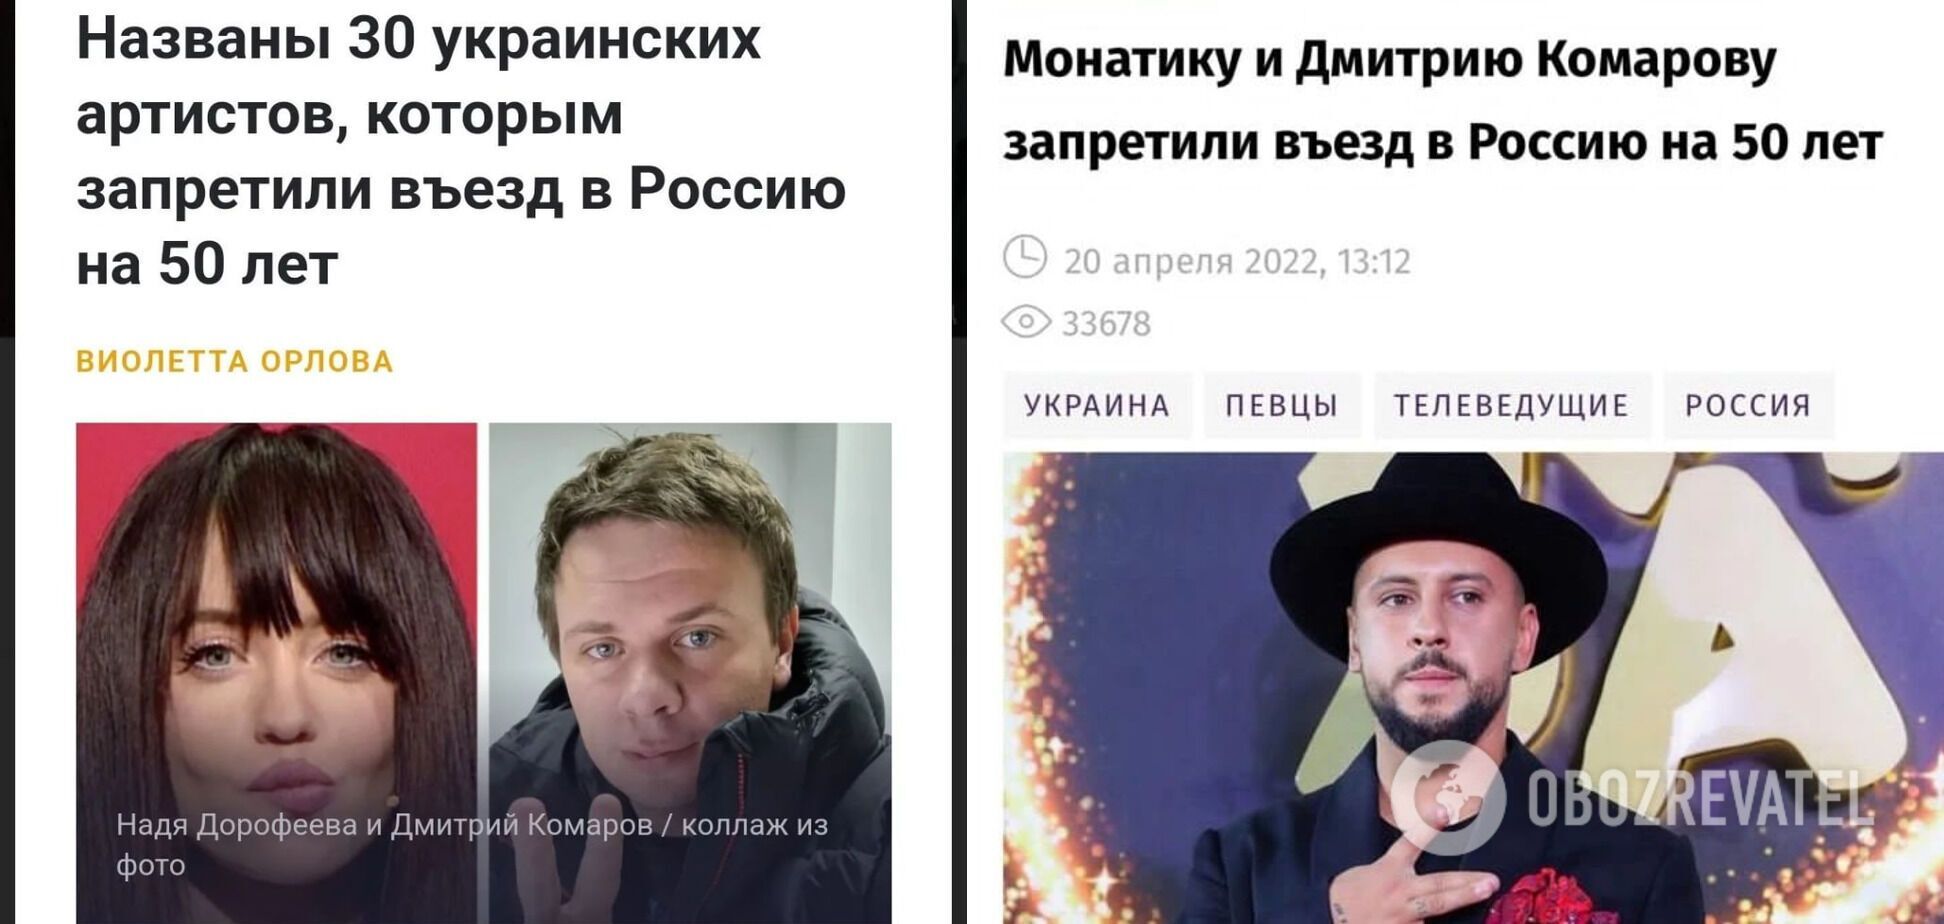 Скриншоты российских новостей о запрете въезда Комарову.